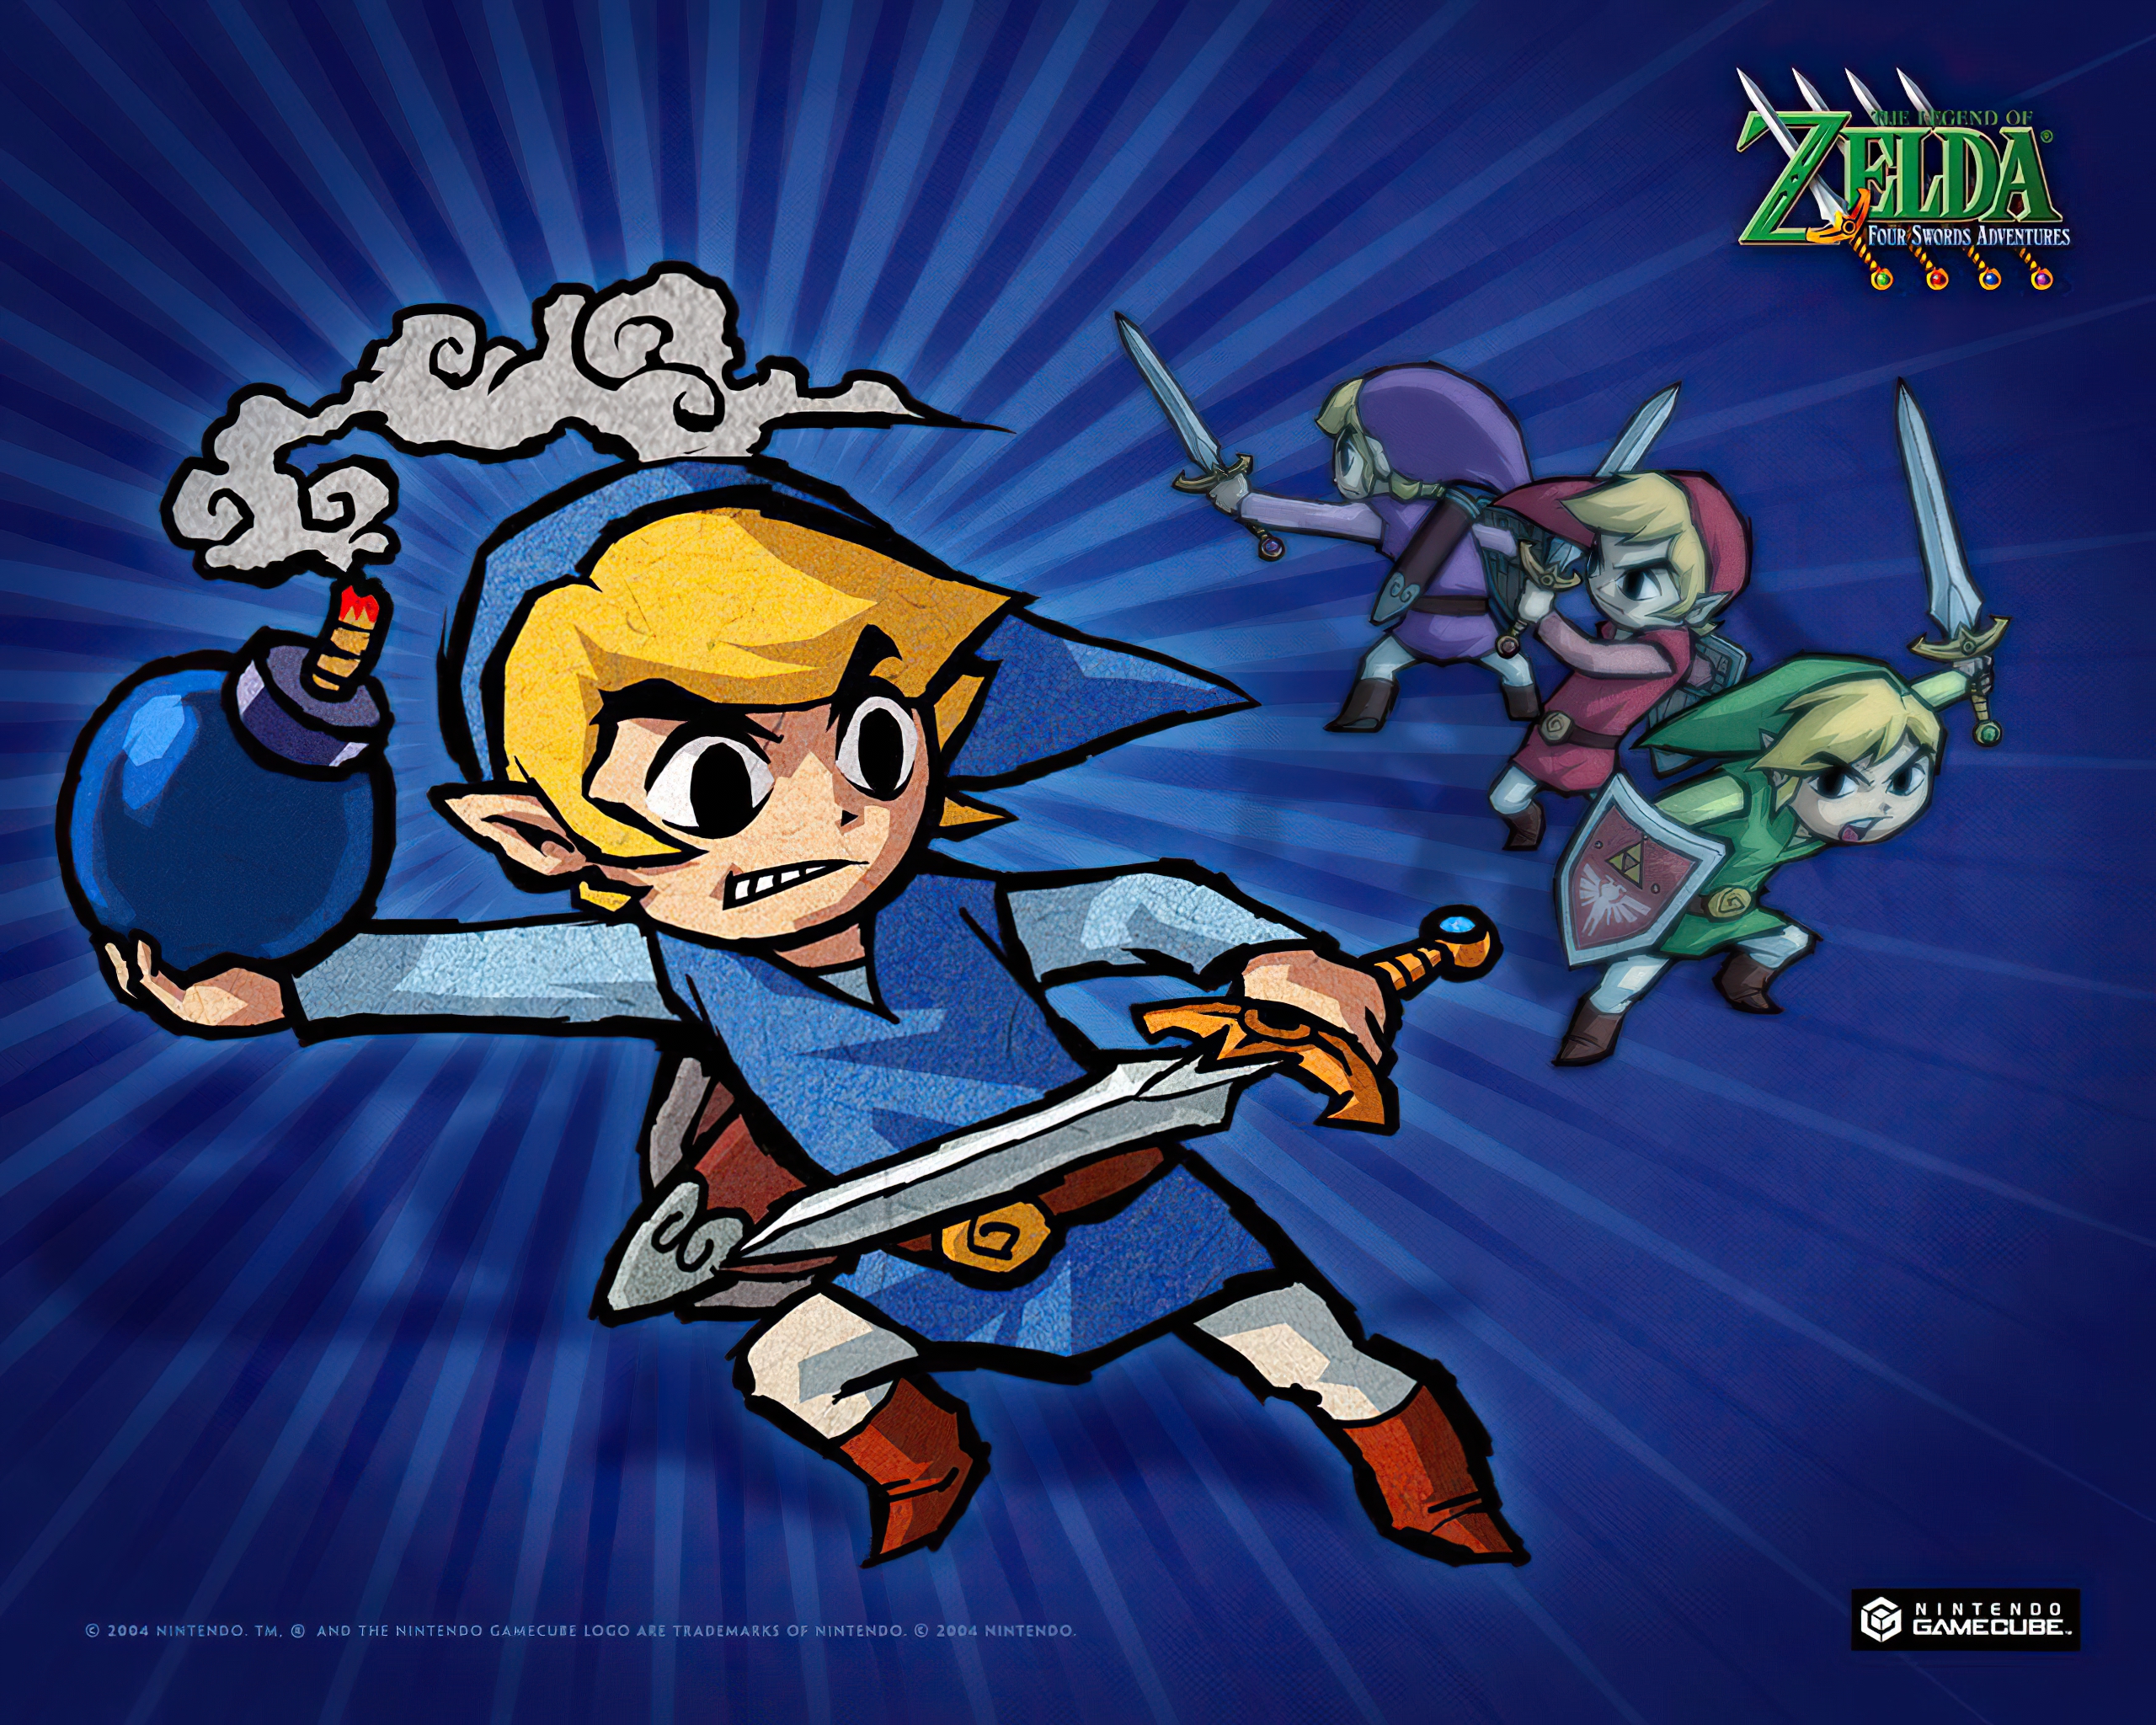 Включи 4 приключение. The Legend of Zelda: four Swords Adventures. Легенда о Зельде четверо героев. The Legend of Zelda обои на телефон. The Legend of Zelda: four Swords Adventures (2004).